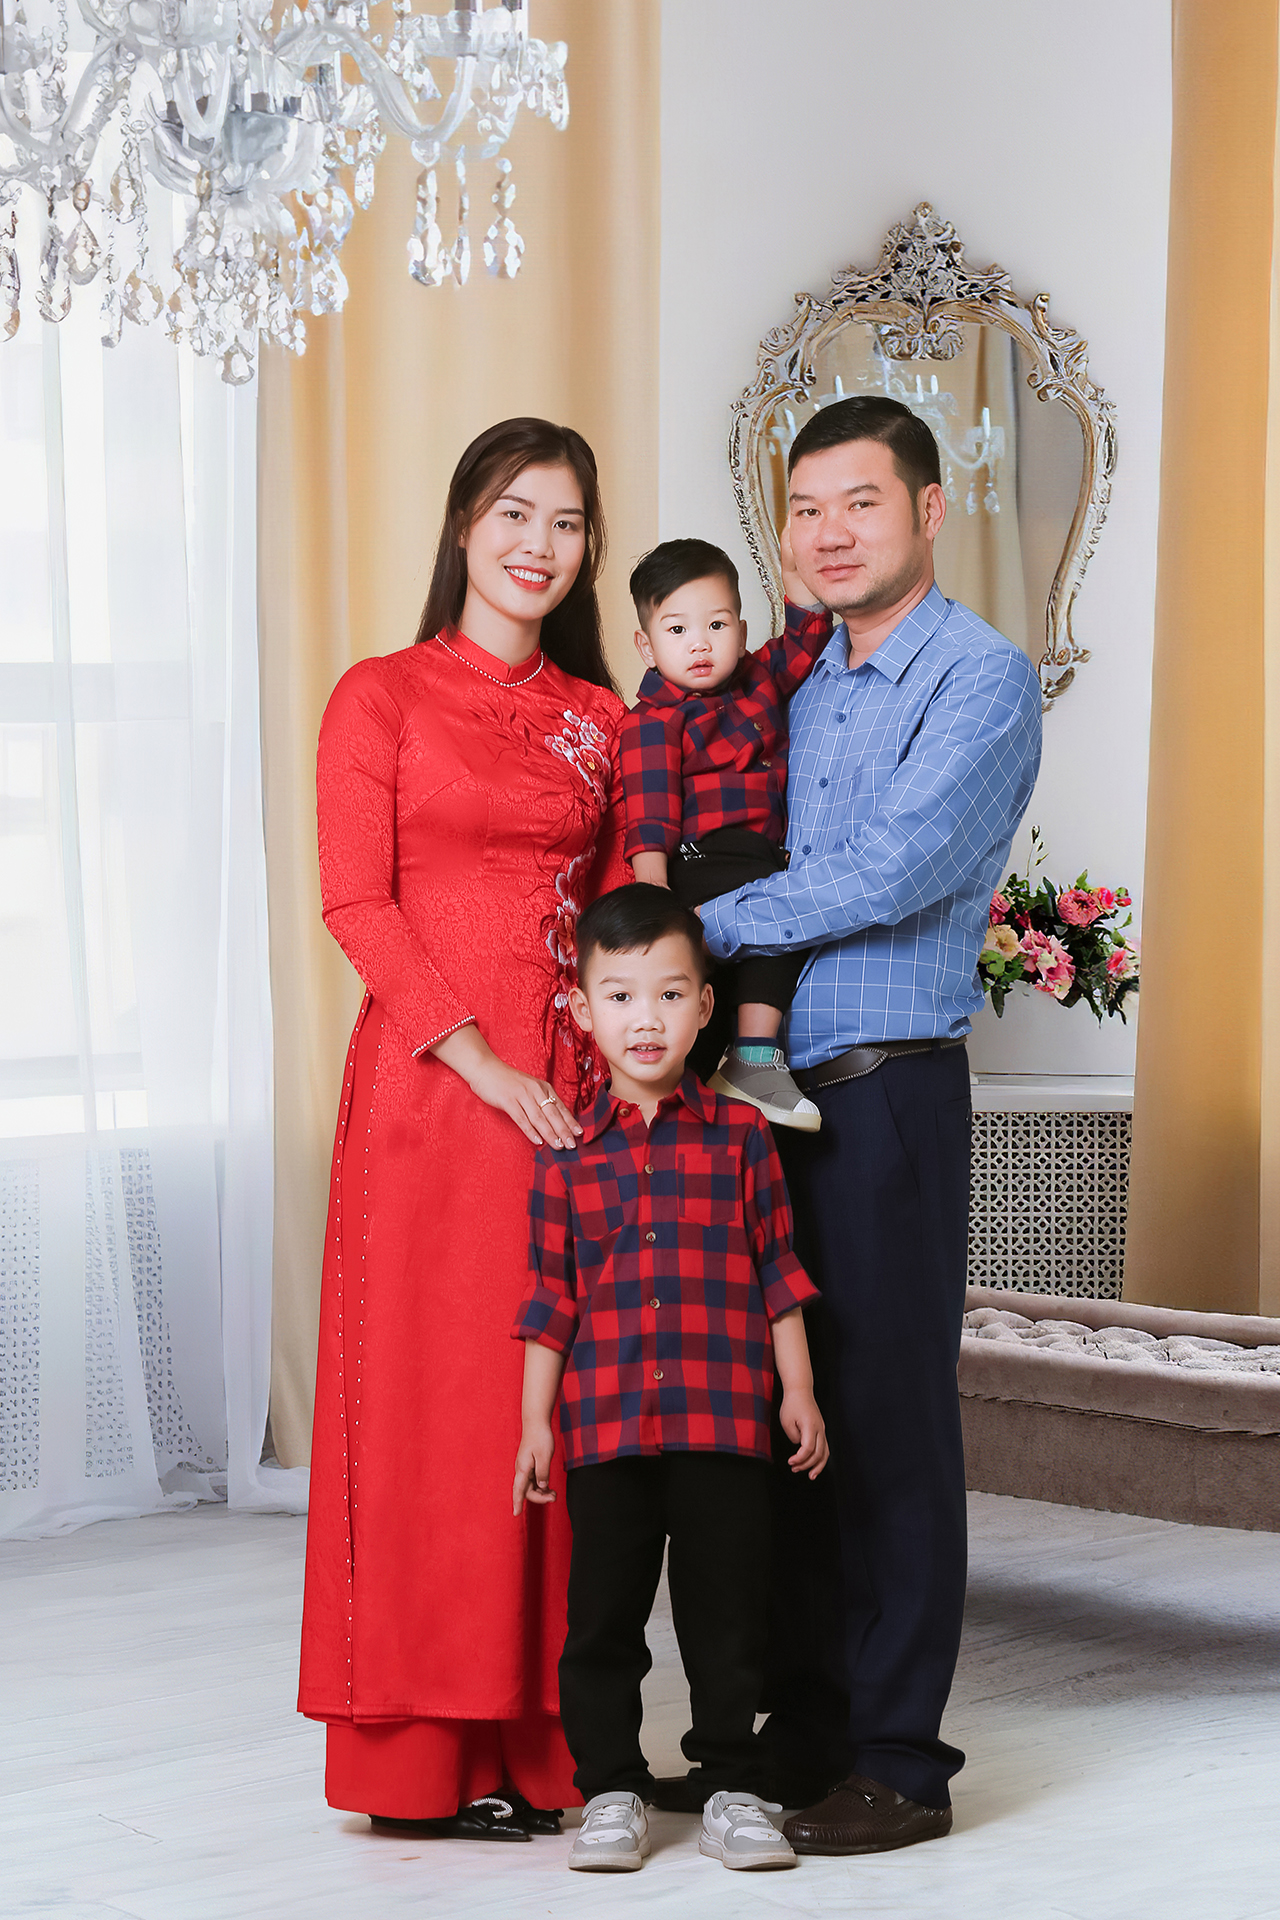 Chụp ảnh gia đình đẹp tại Ninh Bình